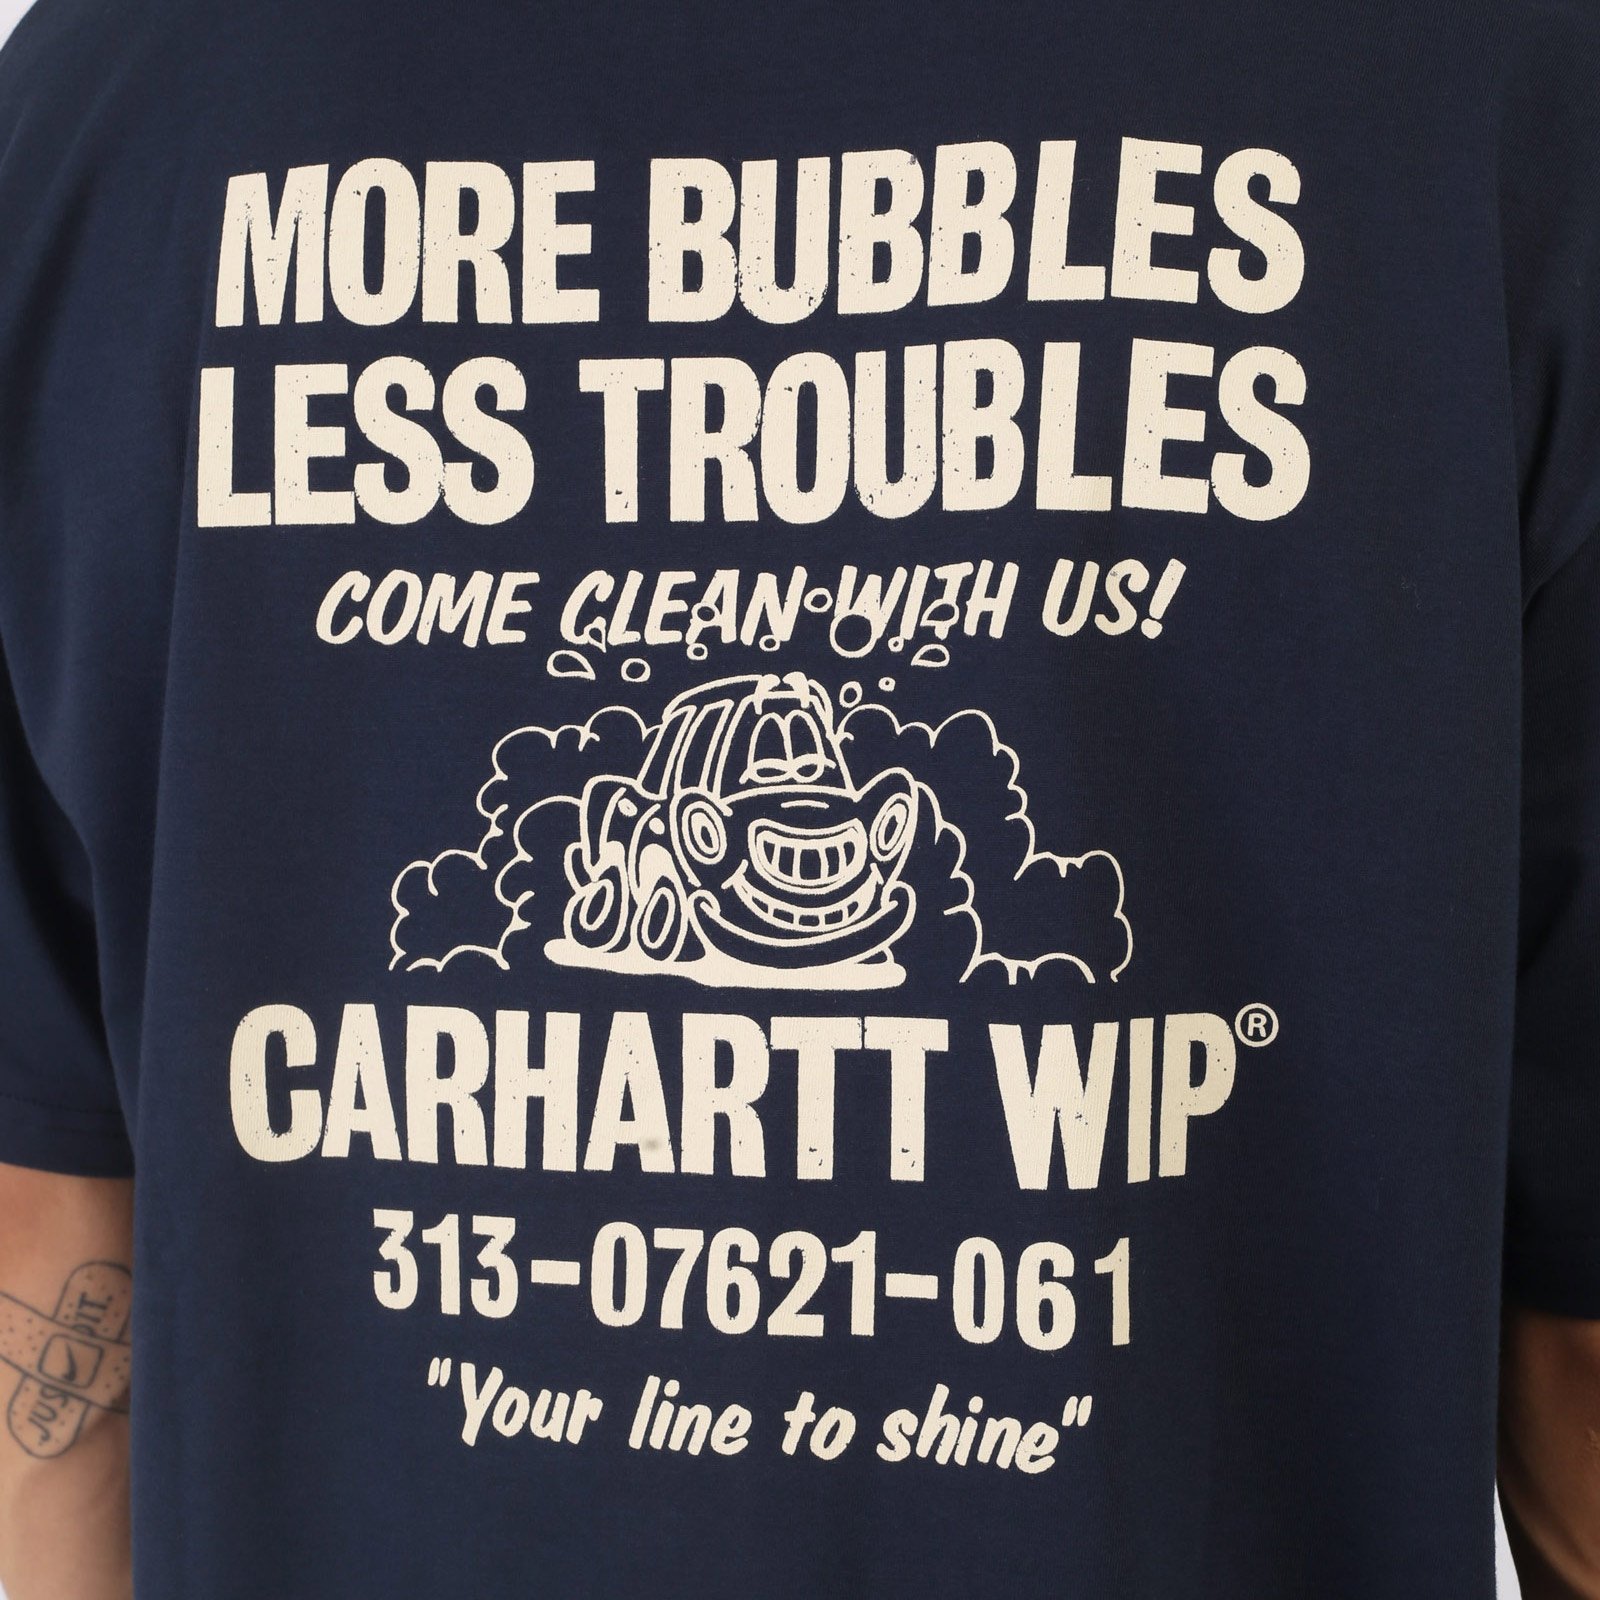 мужская футболка Carhartt WIP S/S Less Troubles T-Shirt  (I033187-blue/wax)  - цена, описание, фото 4